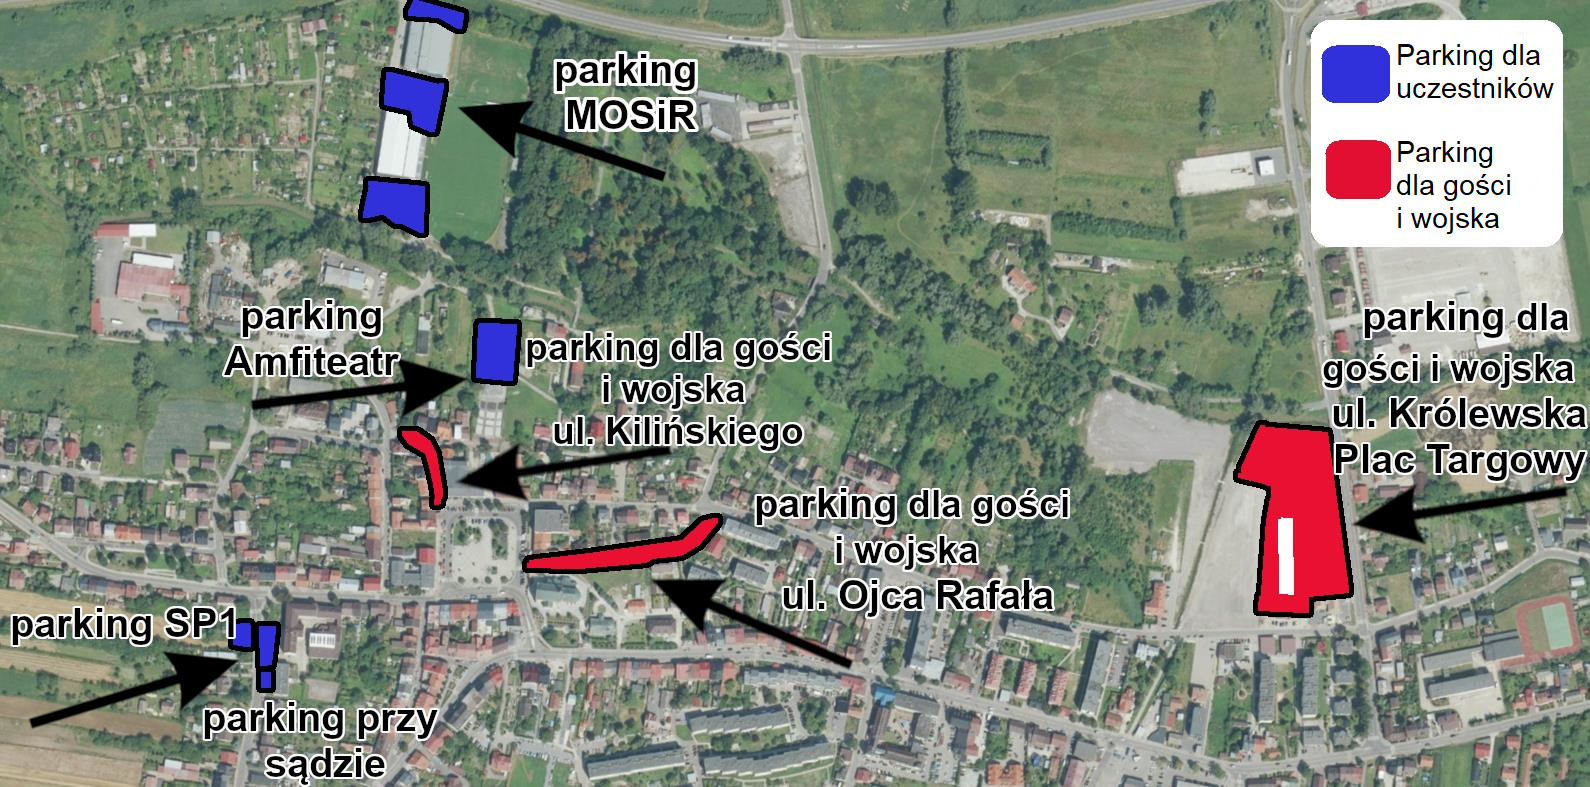 Mapa parkingów podczas Uroczystej Przysięgi Wojskowej Żołnierzy 11 Małopolskiej Brygady Obrony Terytorialnej.